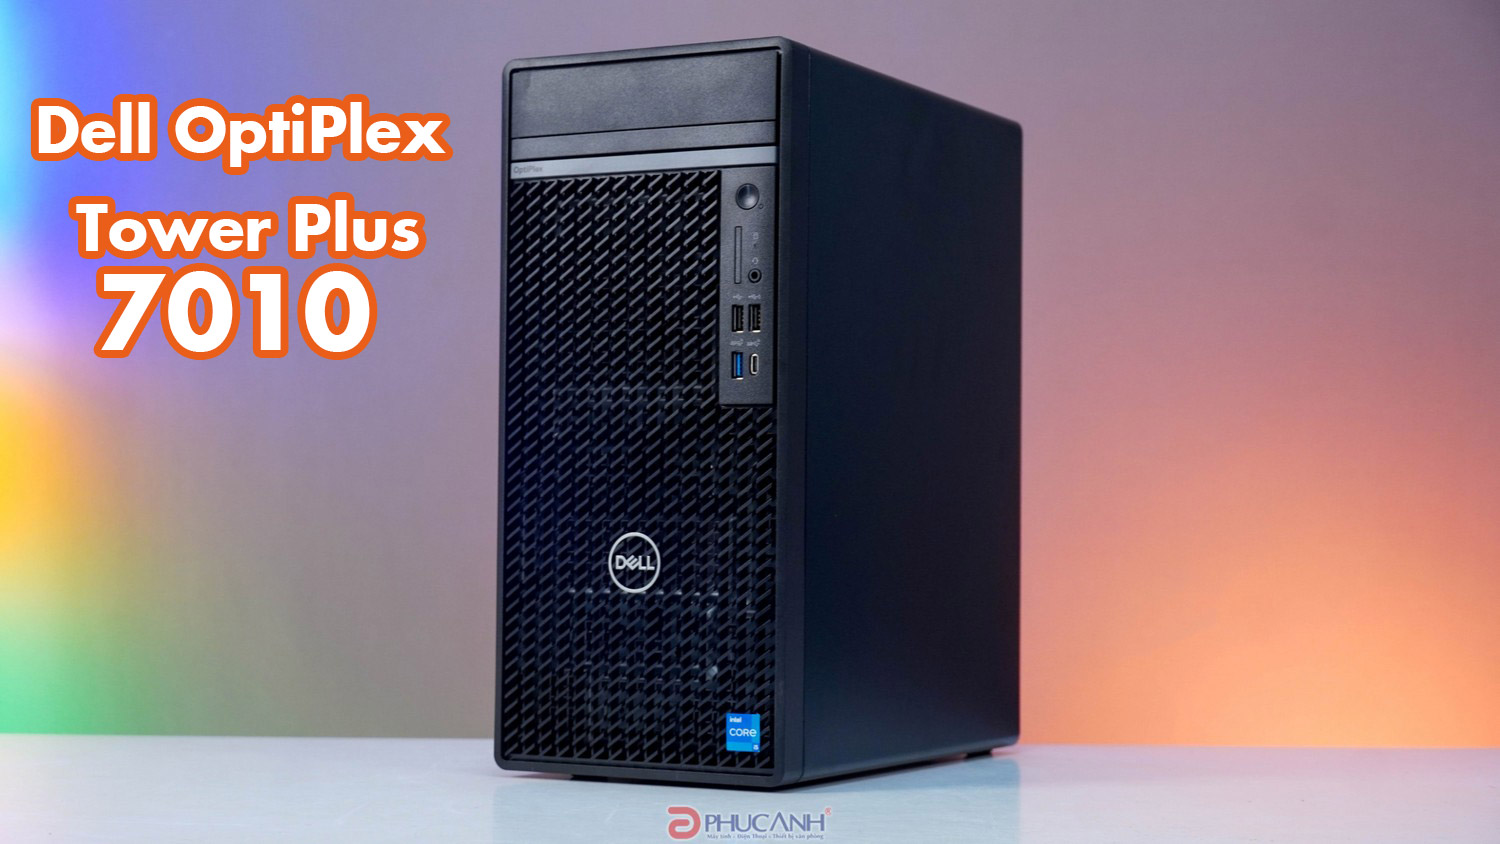 Đánh giá máy tính để bàn Dell OptiPlex Tower Plus 7010 - Sự thay đổi sáng giá cho doanh nghiệp